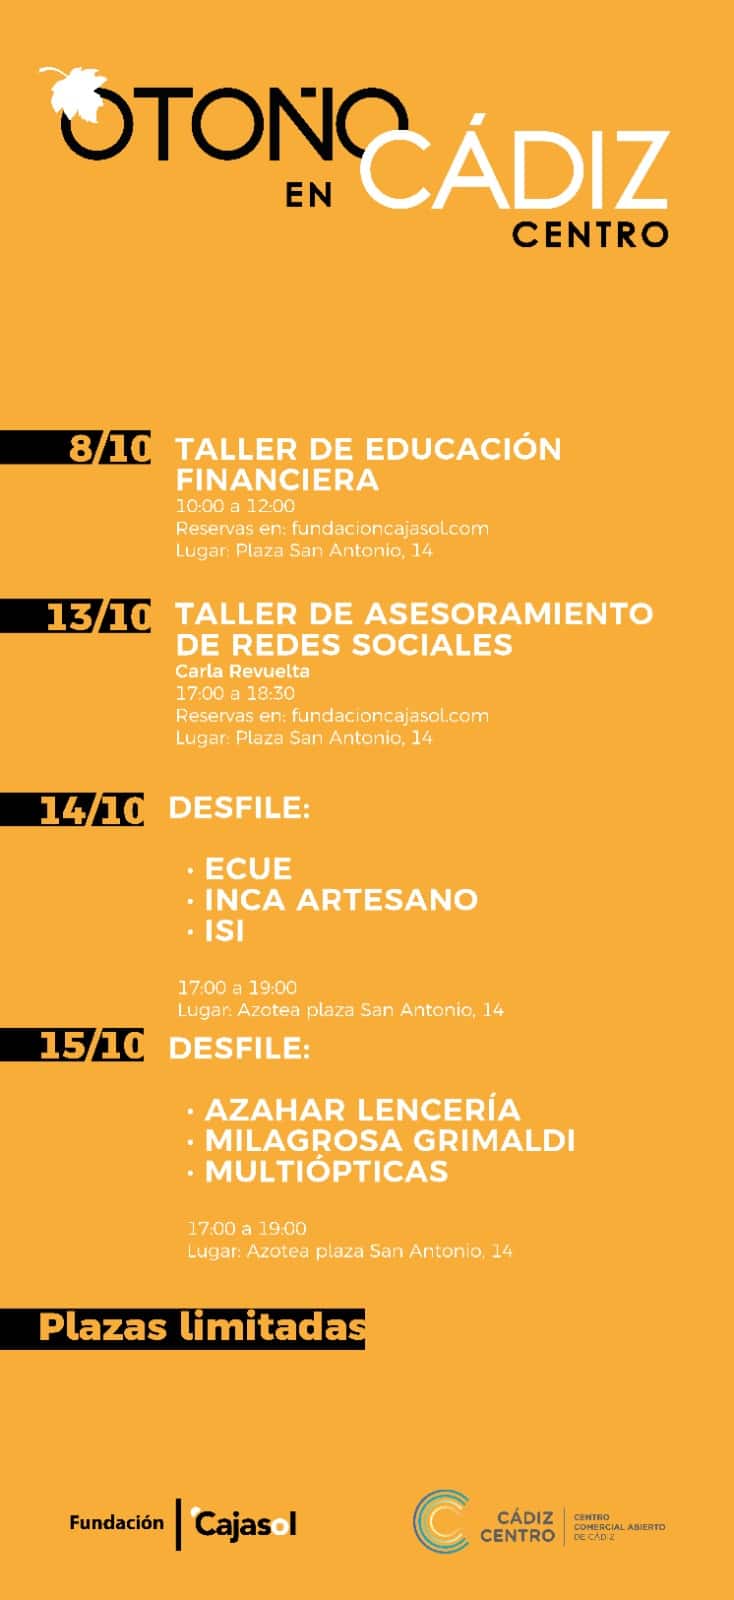 Cartel del actividades en Otoño en Cádiz Centro